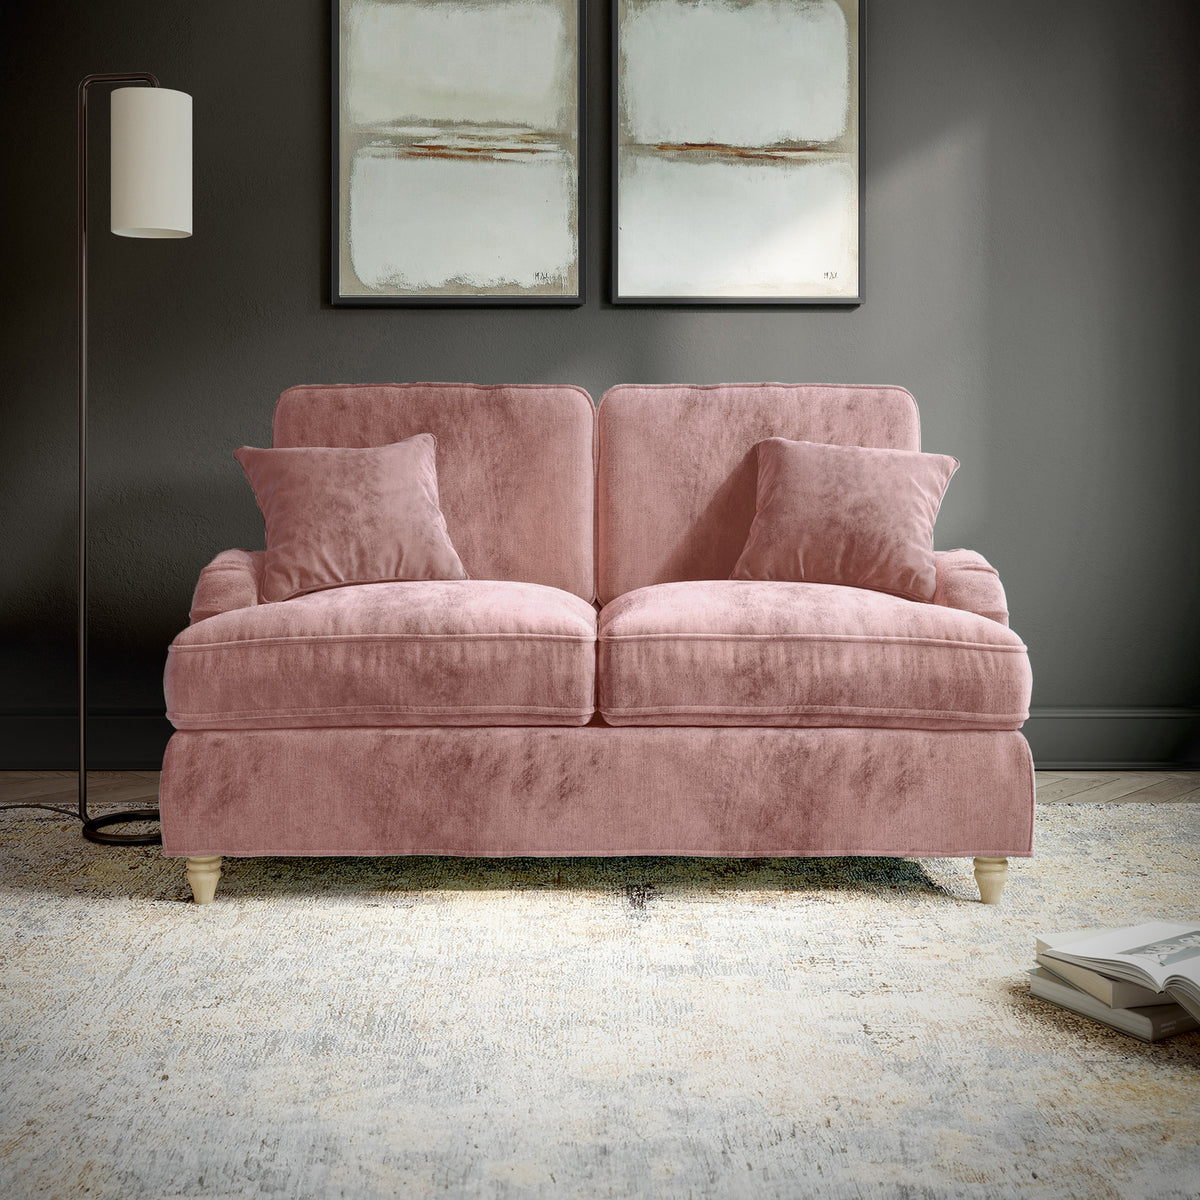 Arthur Blush Pink 2 Seater Sofa from Roseland Furniture